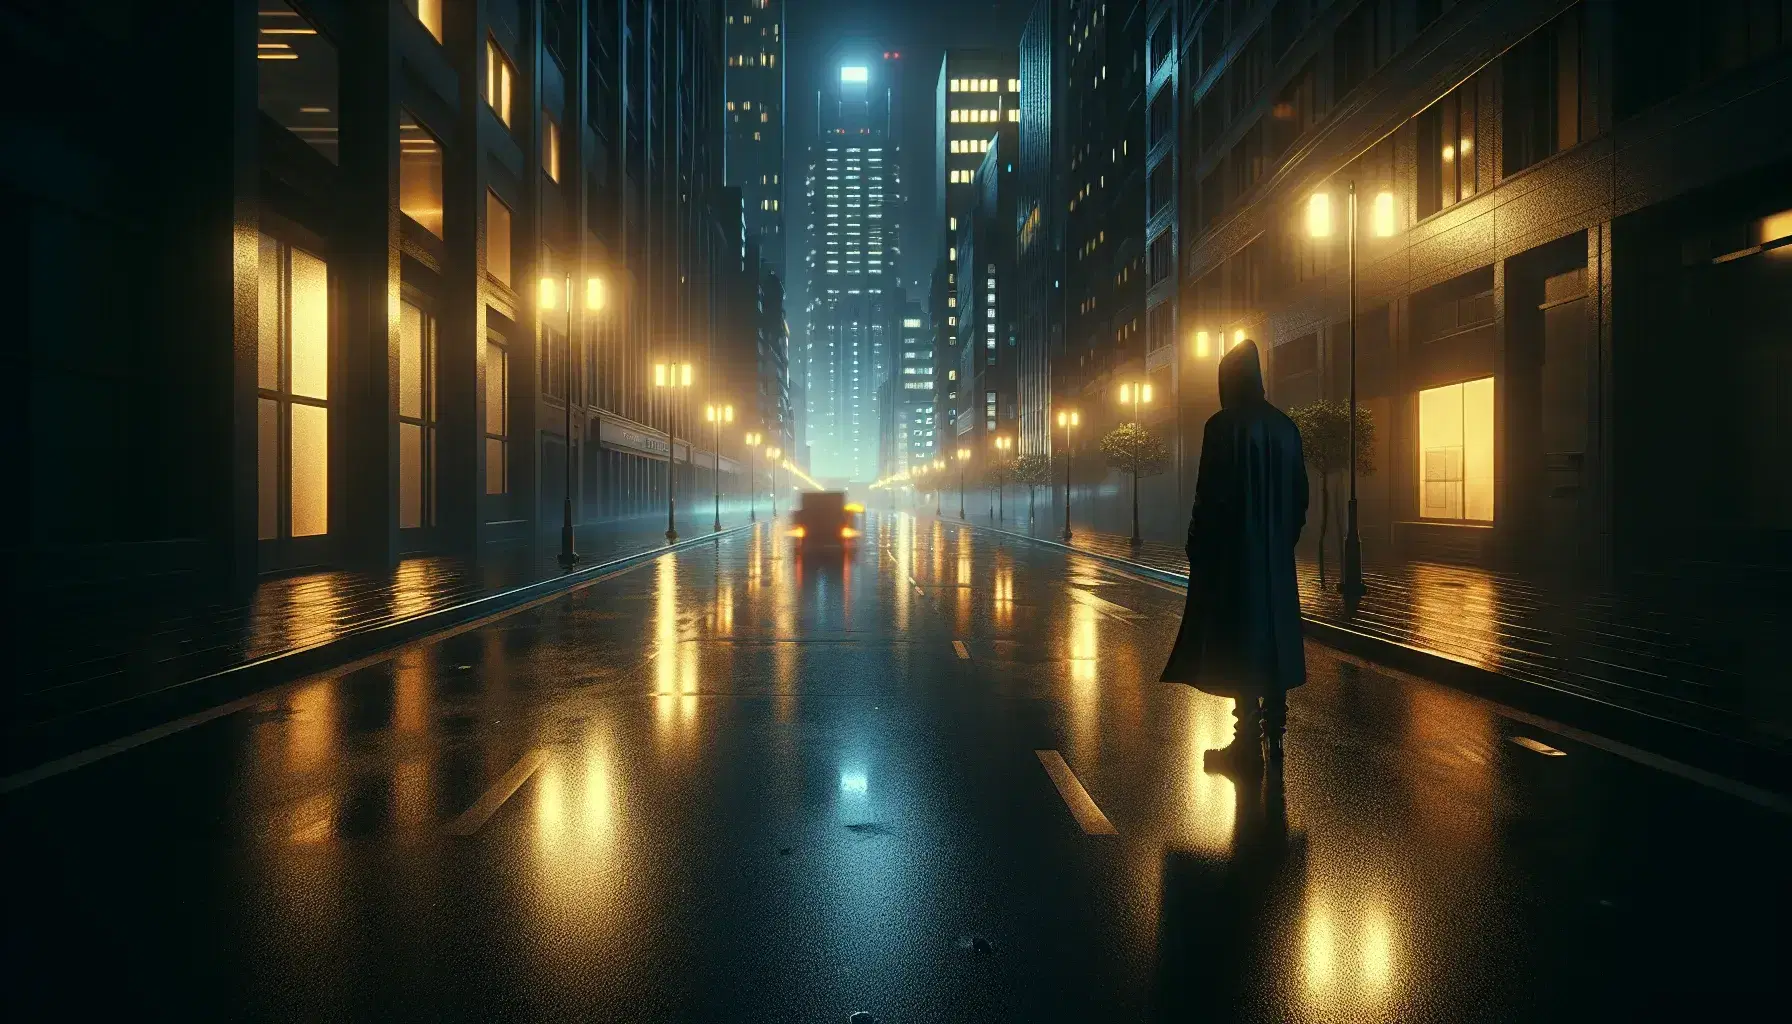 Scena urbana notturna con figura umana in cappotto nero riflessa su strada bagnata, luci soffuse e architettura moderna.